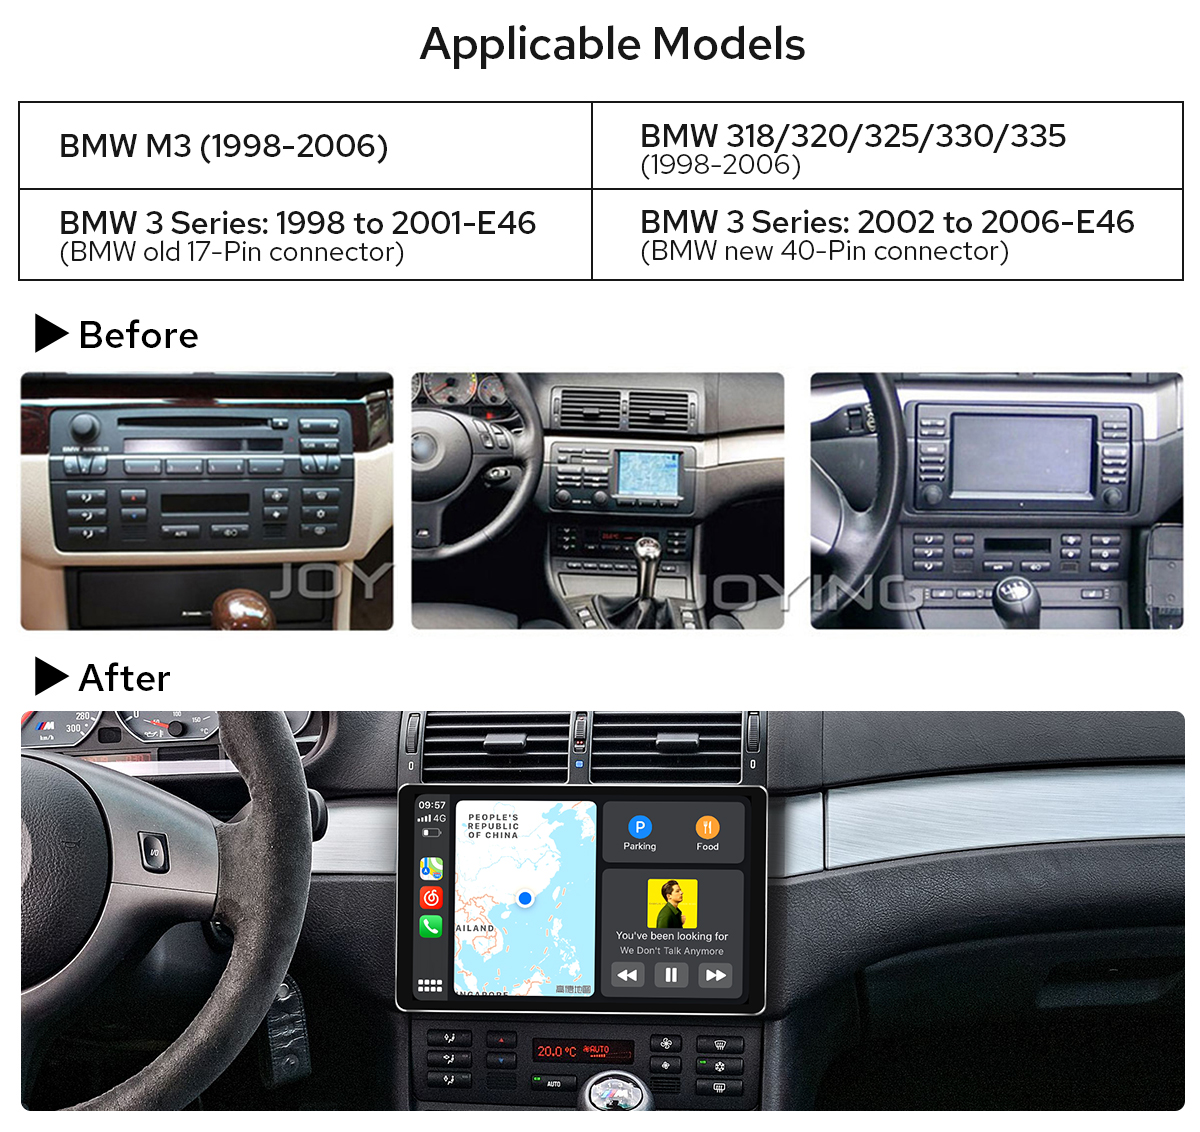 RADIO NAVEGADOR 9 Para BMW E46 Serie 3 1998-2006 GPS ANDROID 10.0